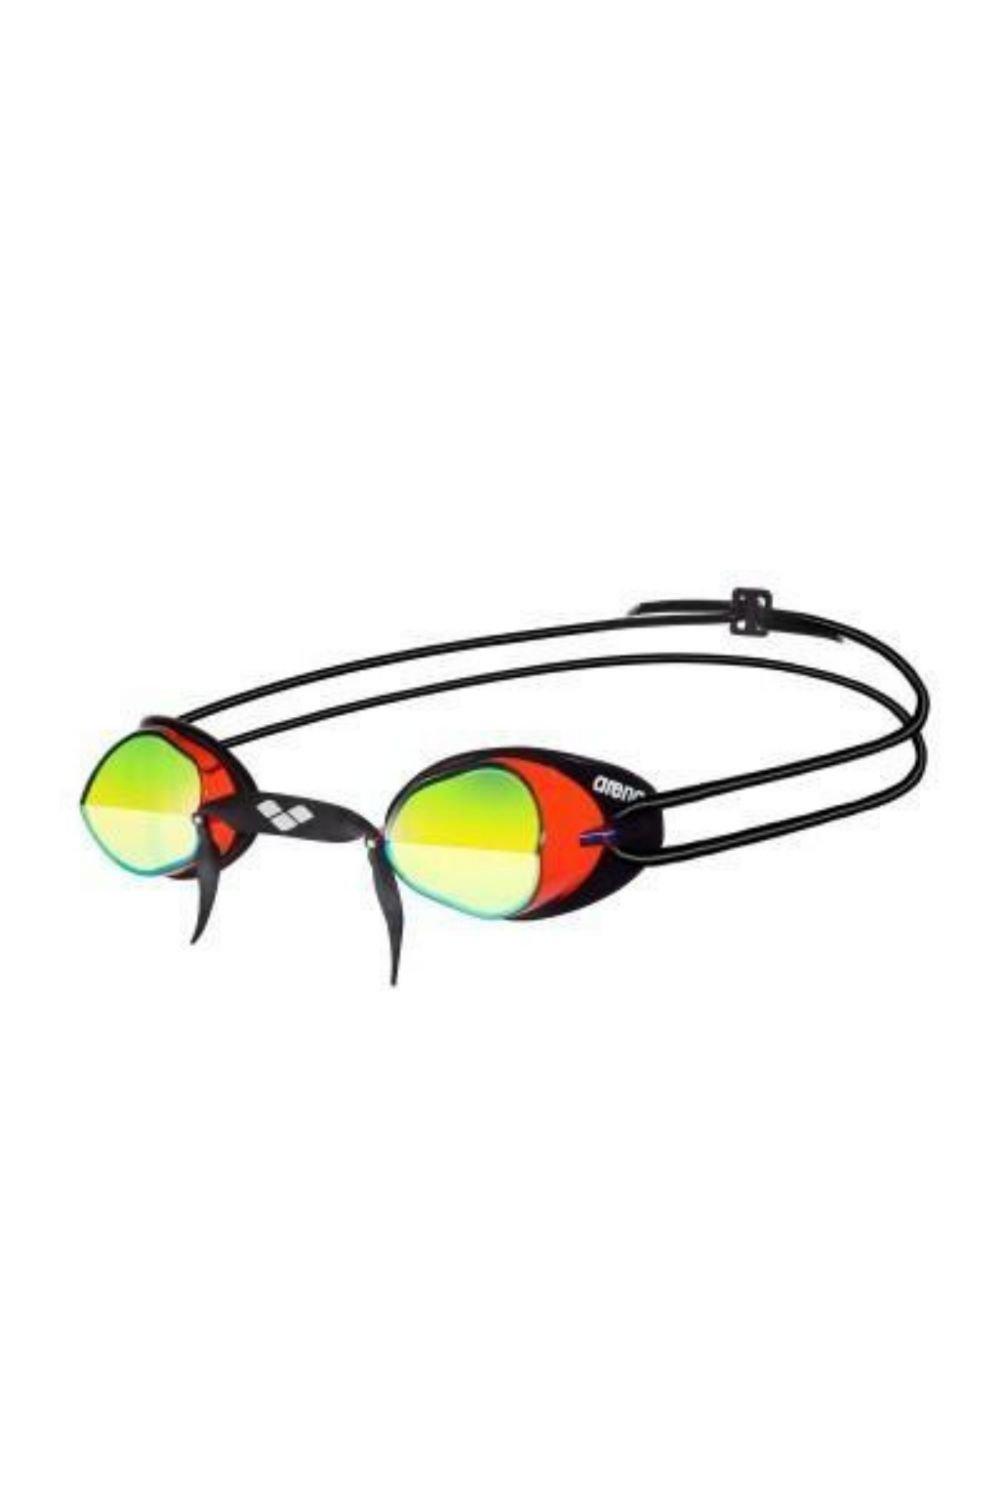 Очки для плавания Swedix Mirror - Зеркальные линзы Arena, красный очки для плавания arena swedix black blue